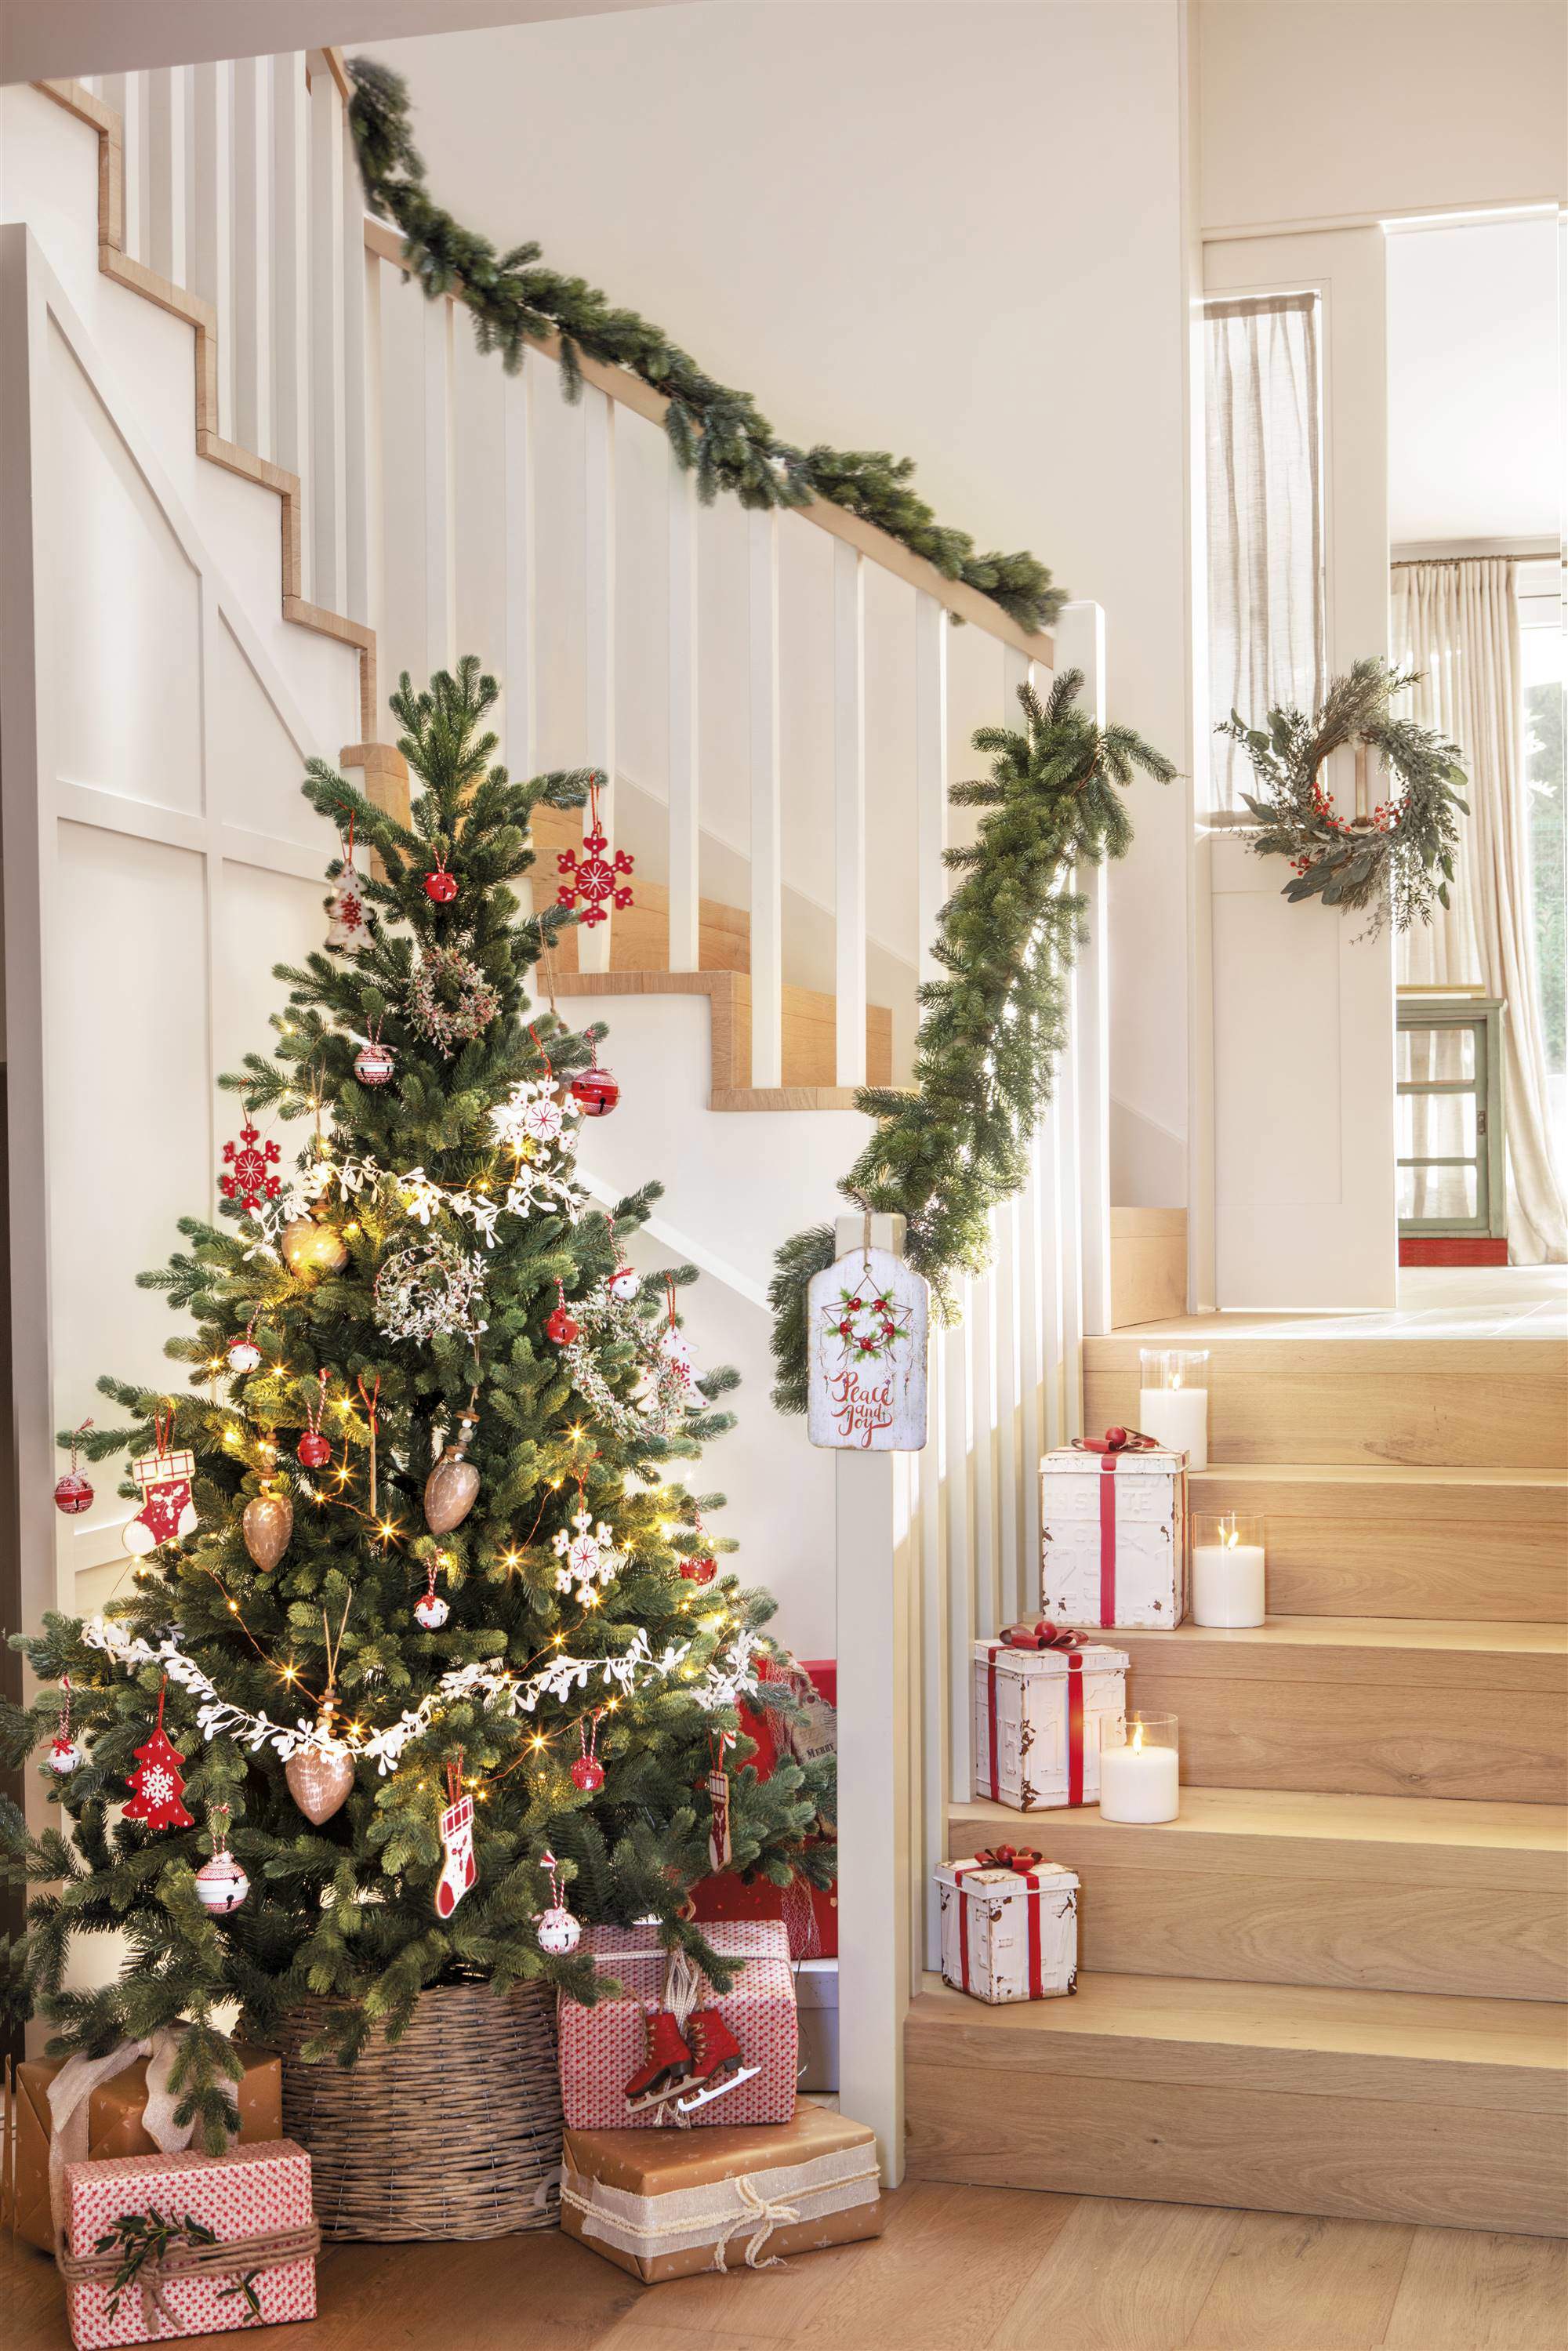 Escaleras decoradas por Navidad